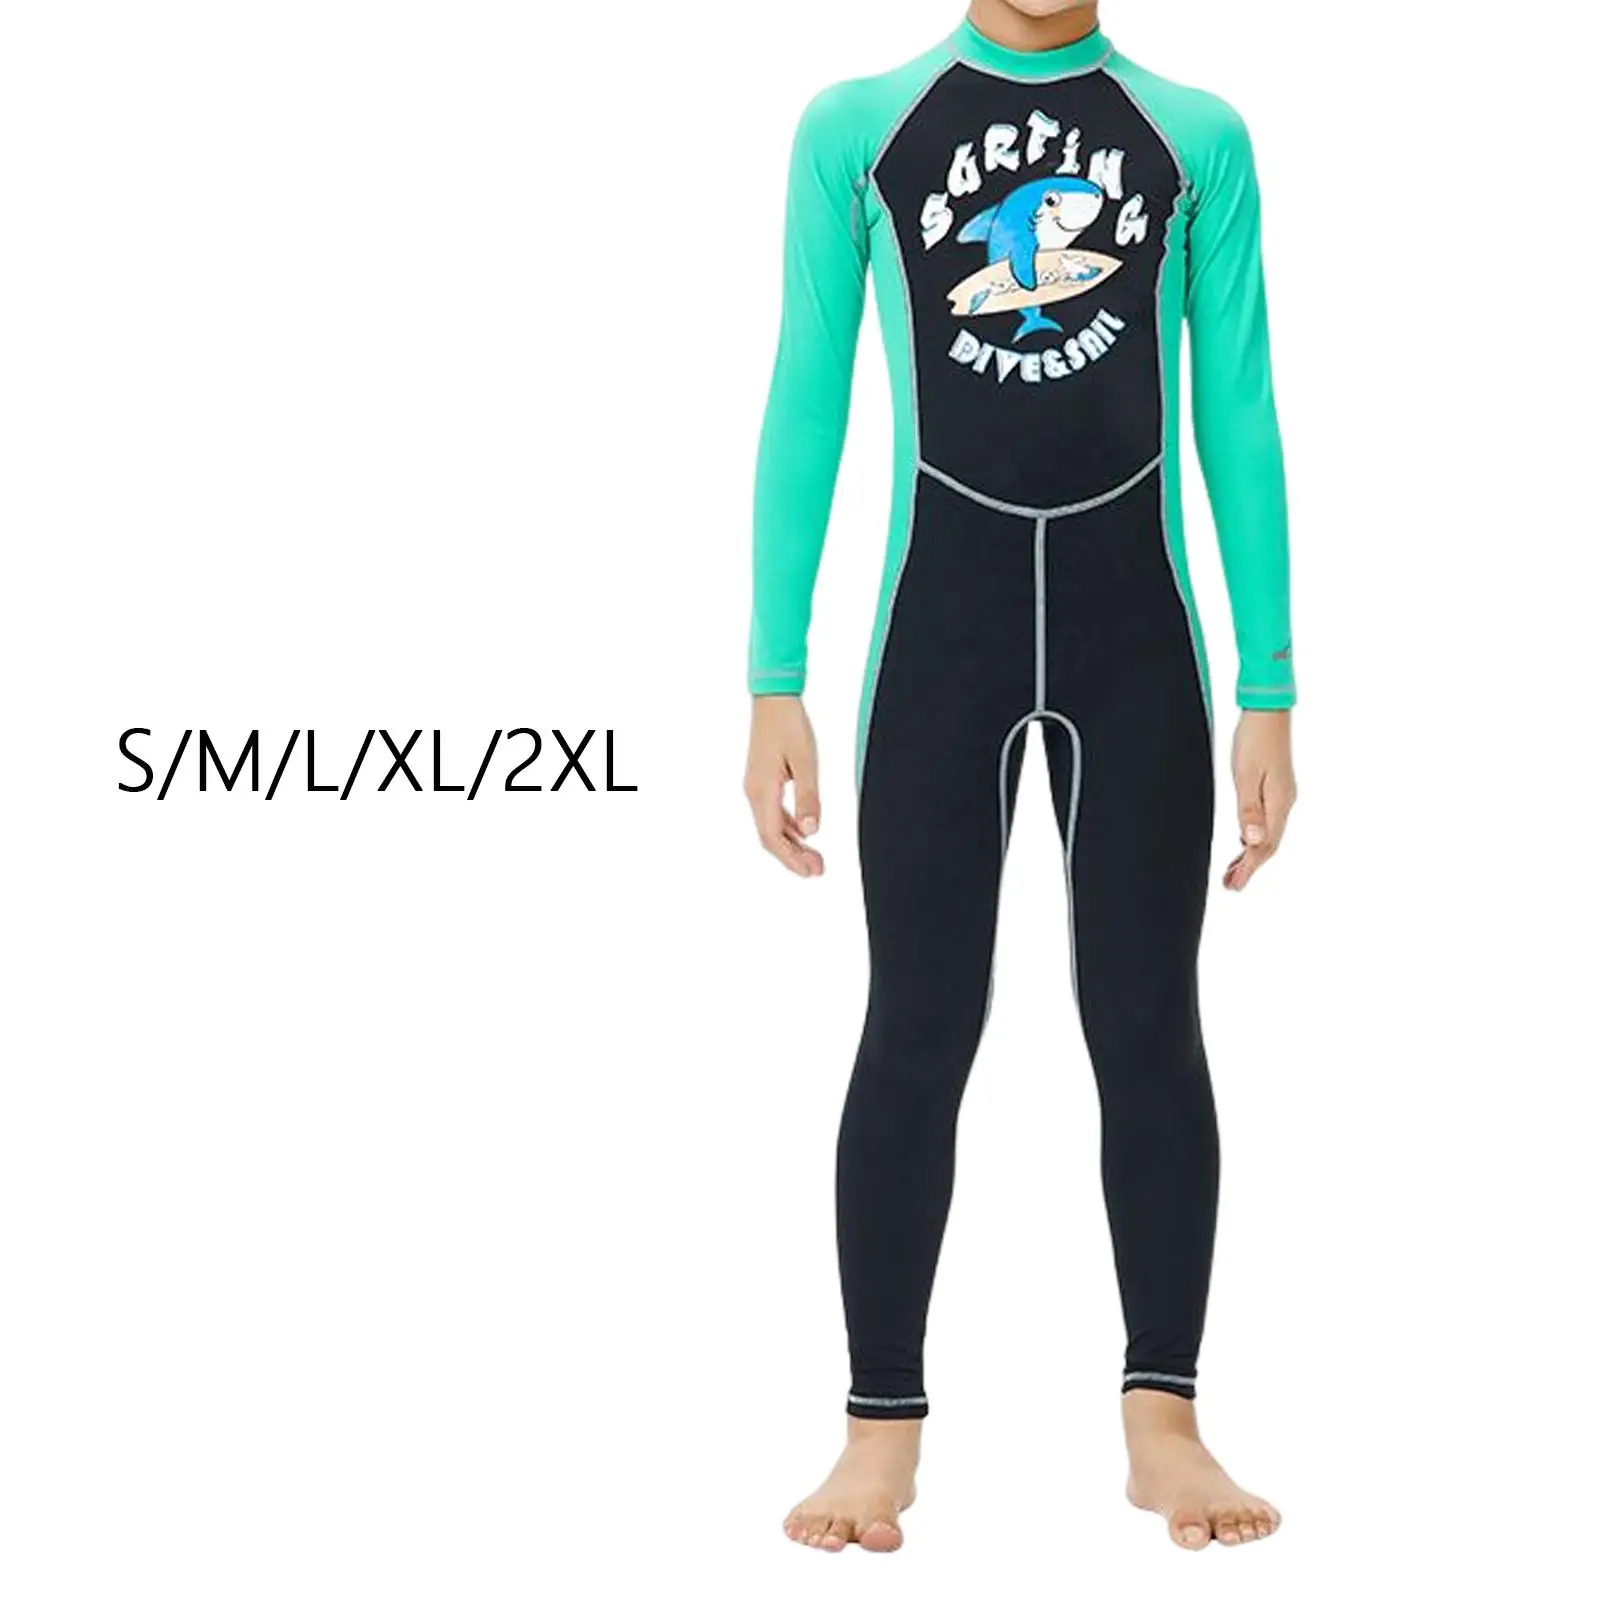 Kids Wetsuit Swimsuit Full suits Scuba Diving Suit Long Sleeve Wet Suit for Snorkeling Surfing Boys